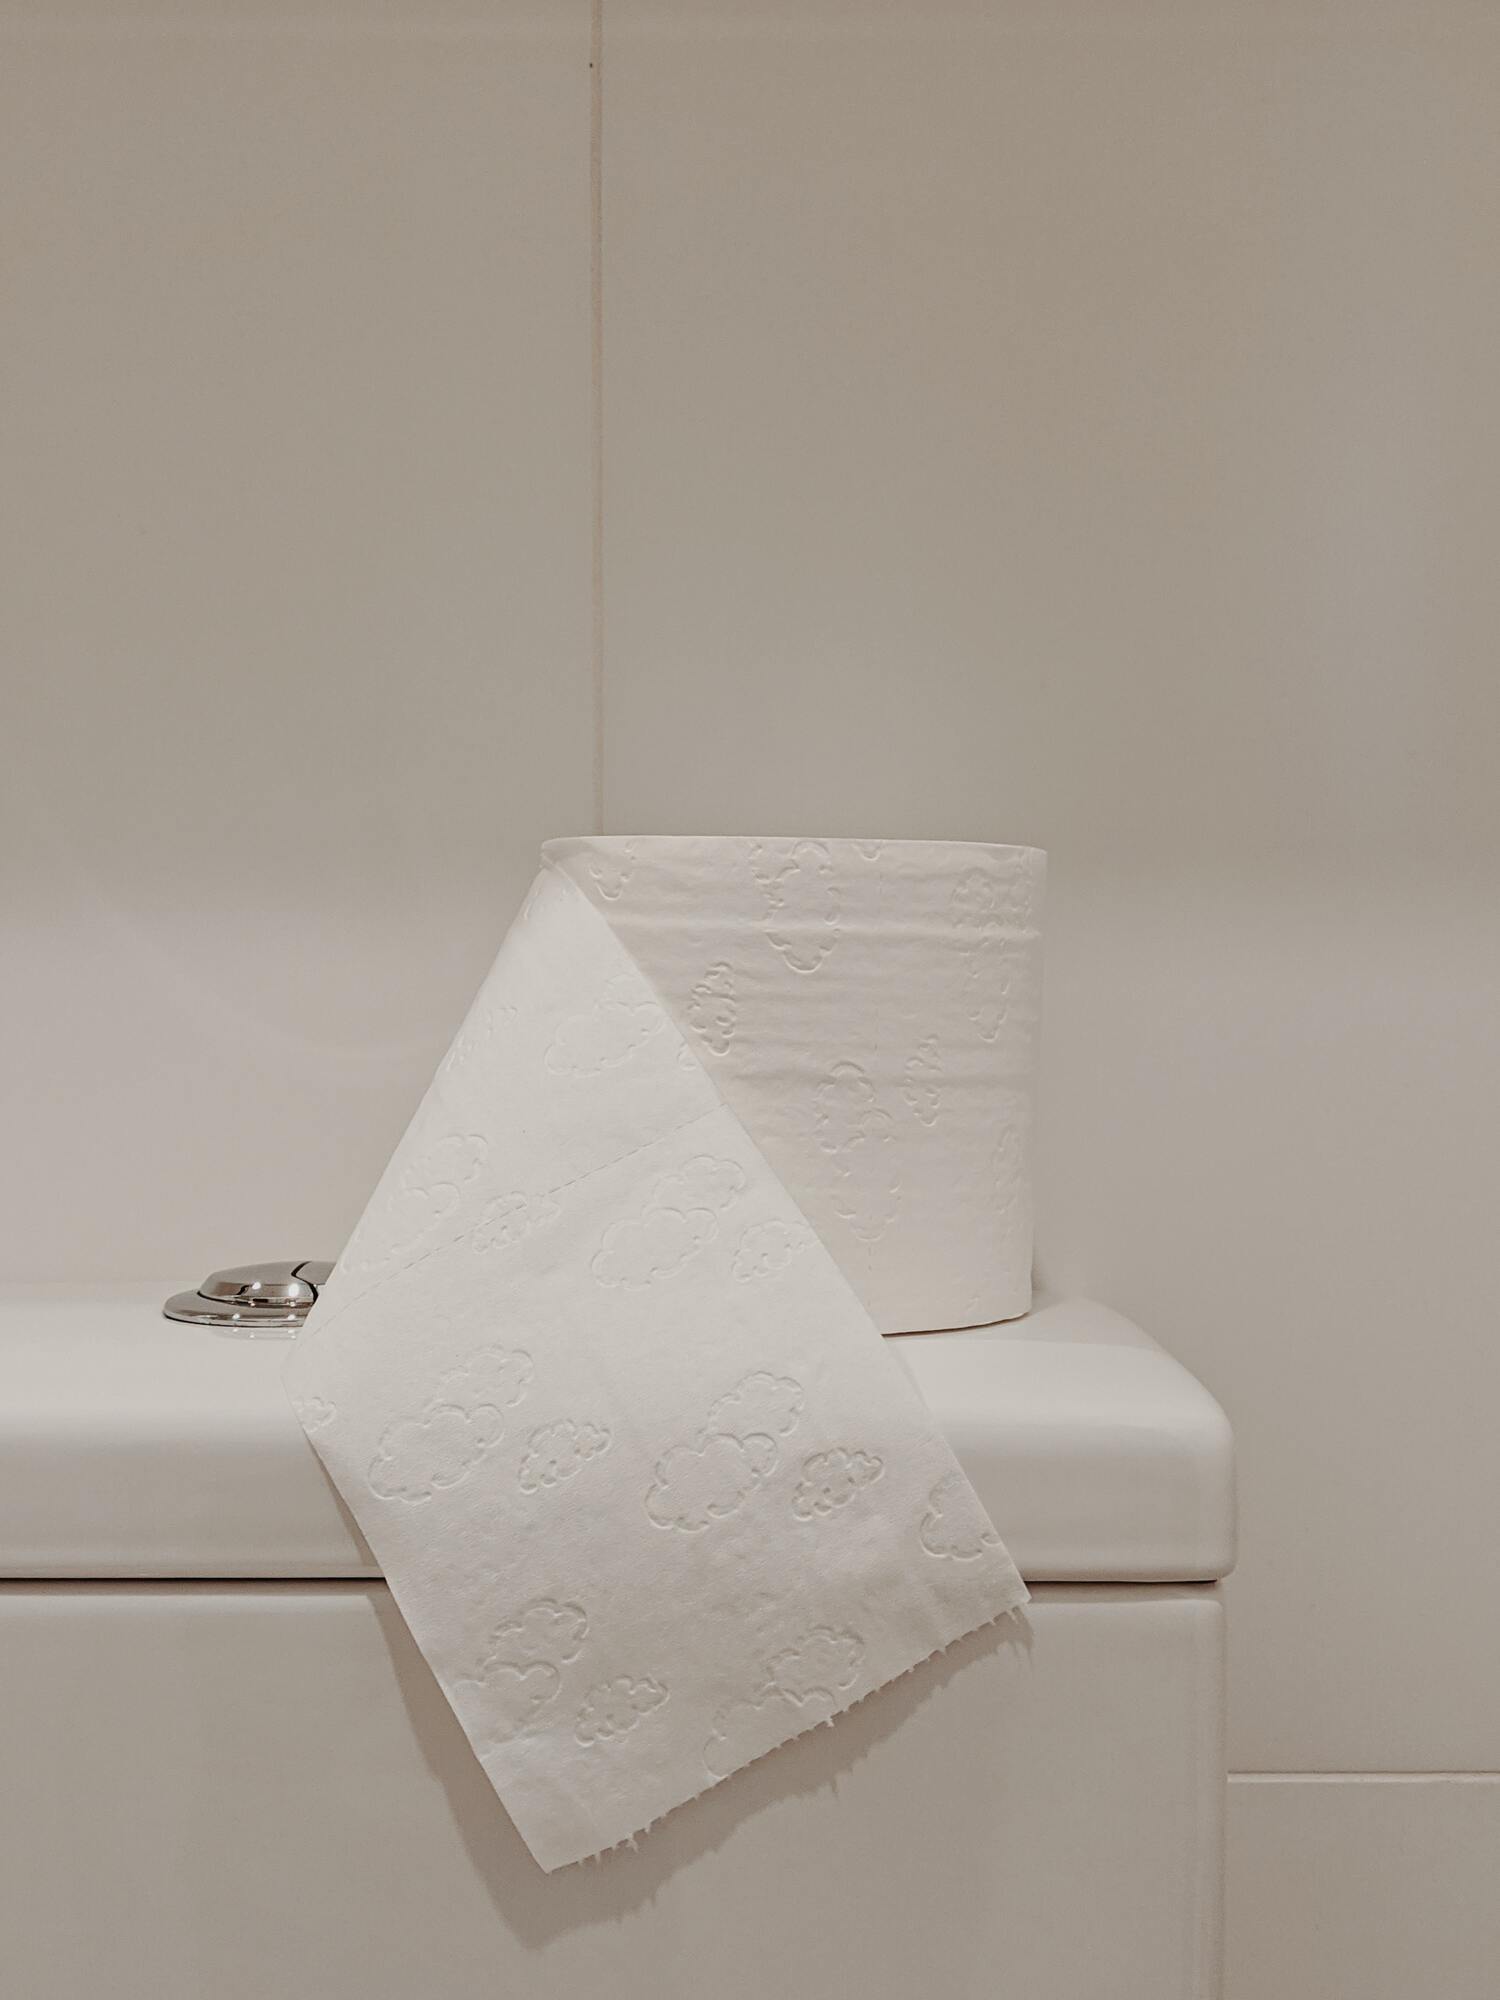 Діана Кастро порадила читачам не змивати за собою в туалеті голими руками